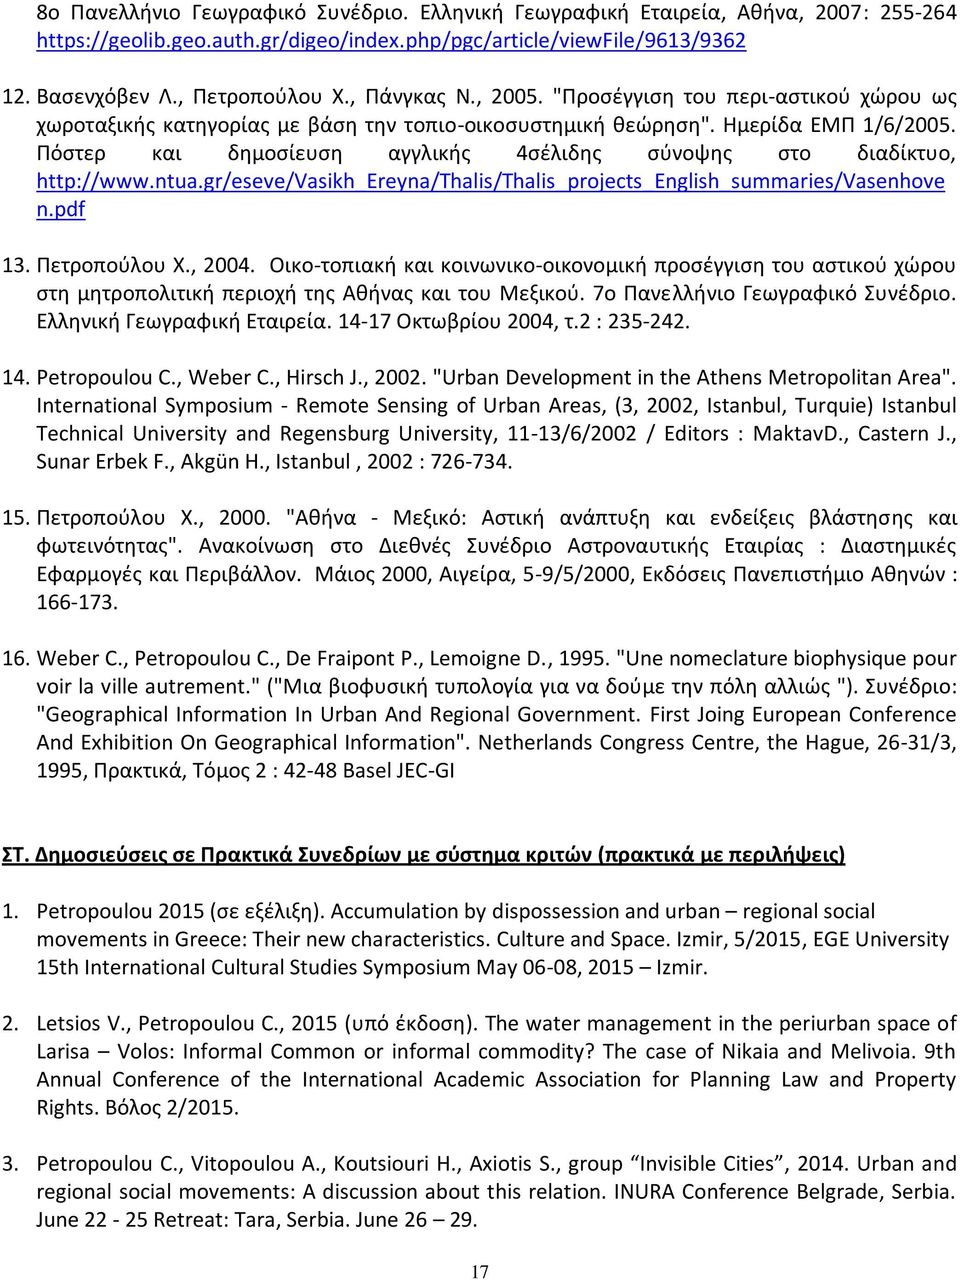 Πόστερ και δημοσίευση αγγλικής 4σέλιδης σύνοψης στο διαδίκτυο, http://www.ntua.gr/eseve/vasikh_ereyna/thalis/thalis_projects_english_summaries/vasenhove n.pdf 13. Πετροπούλου Χ., 2004.